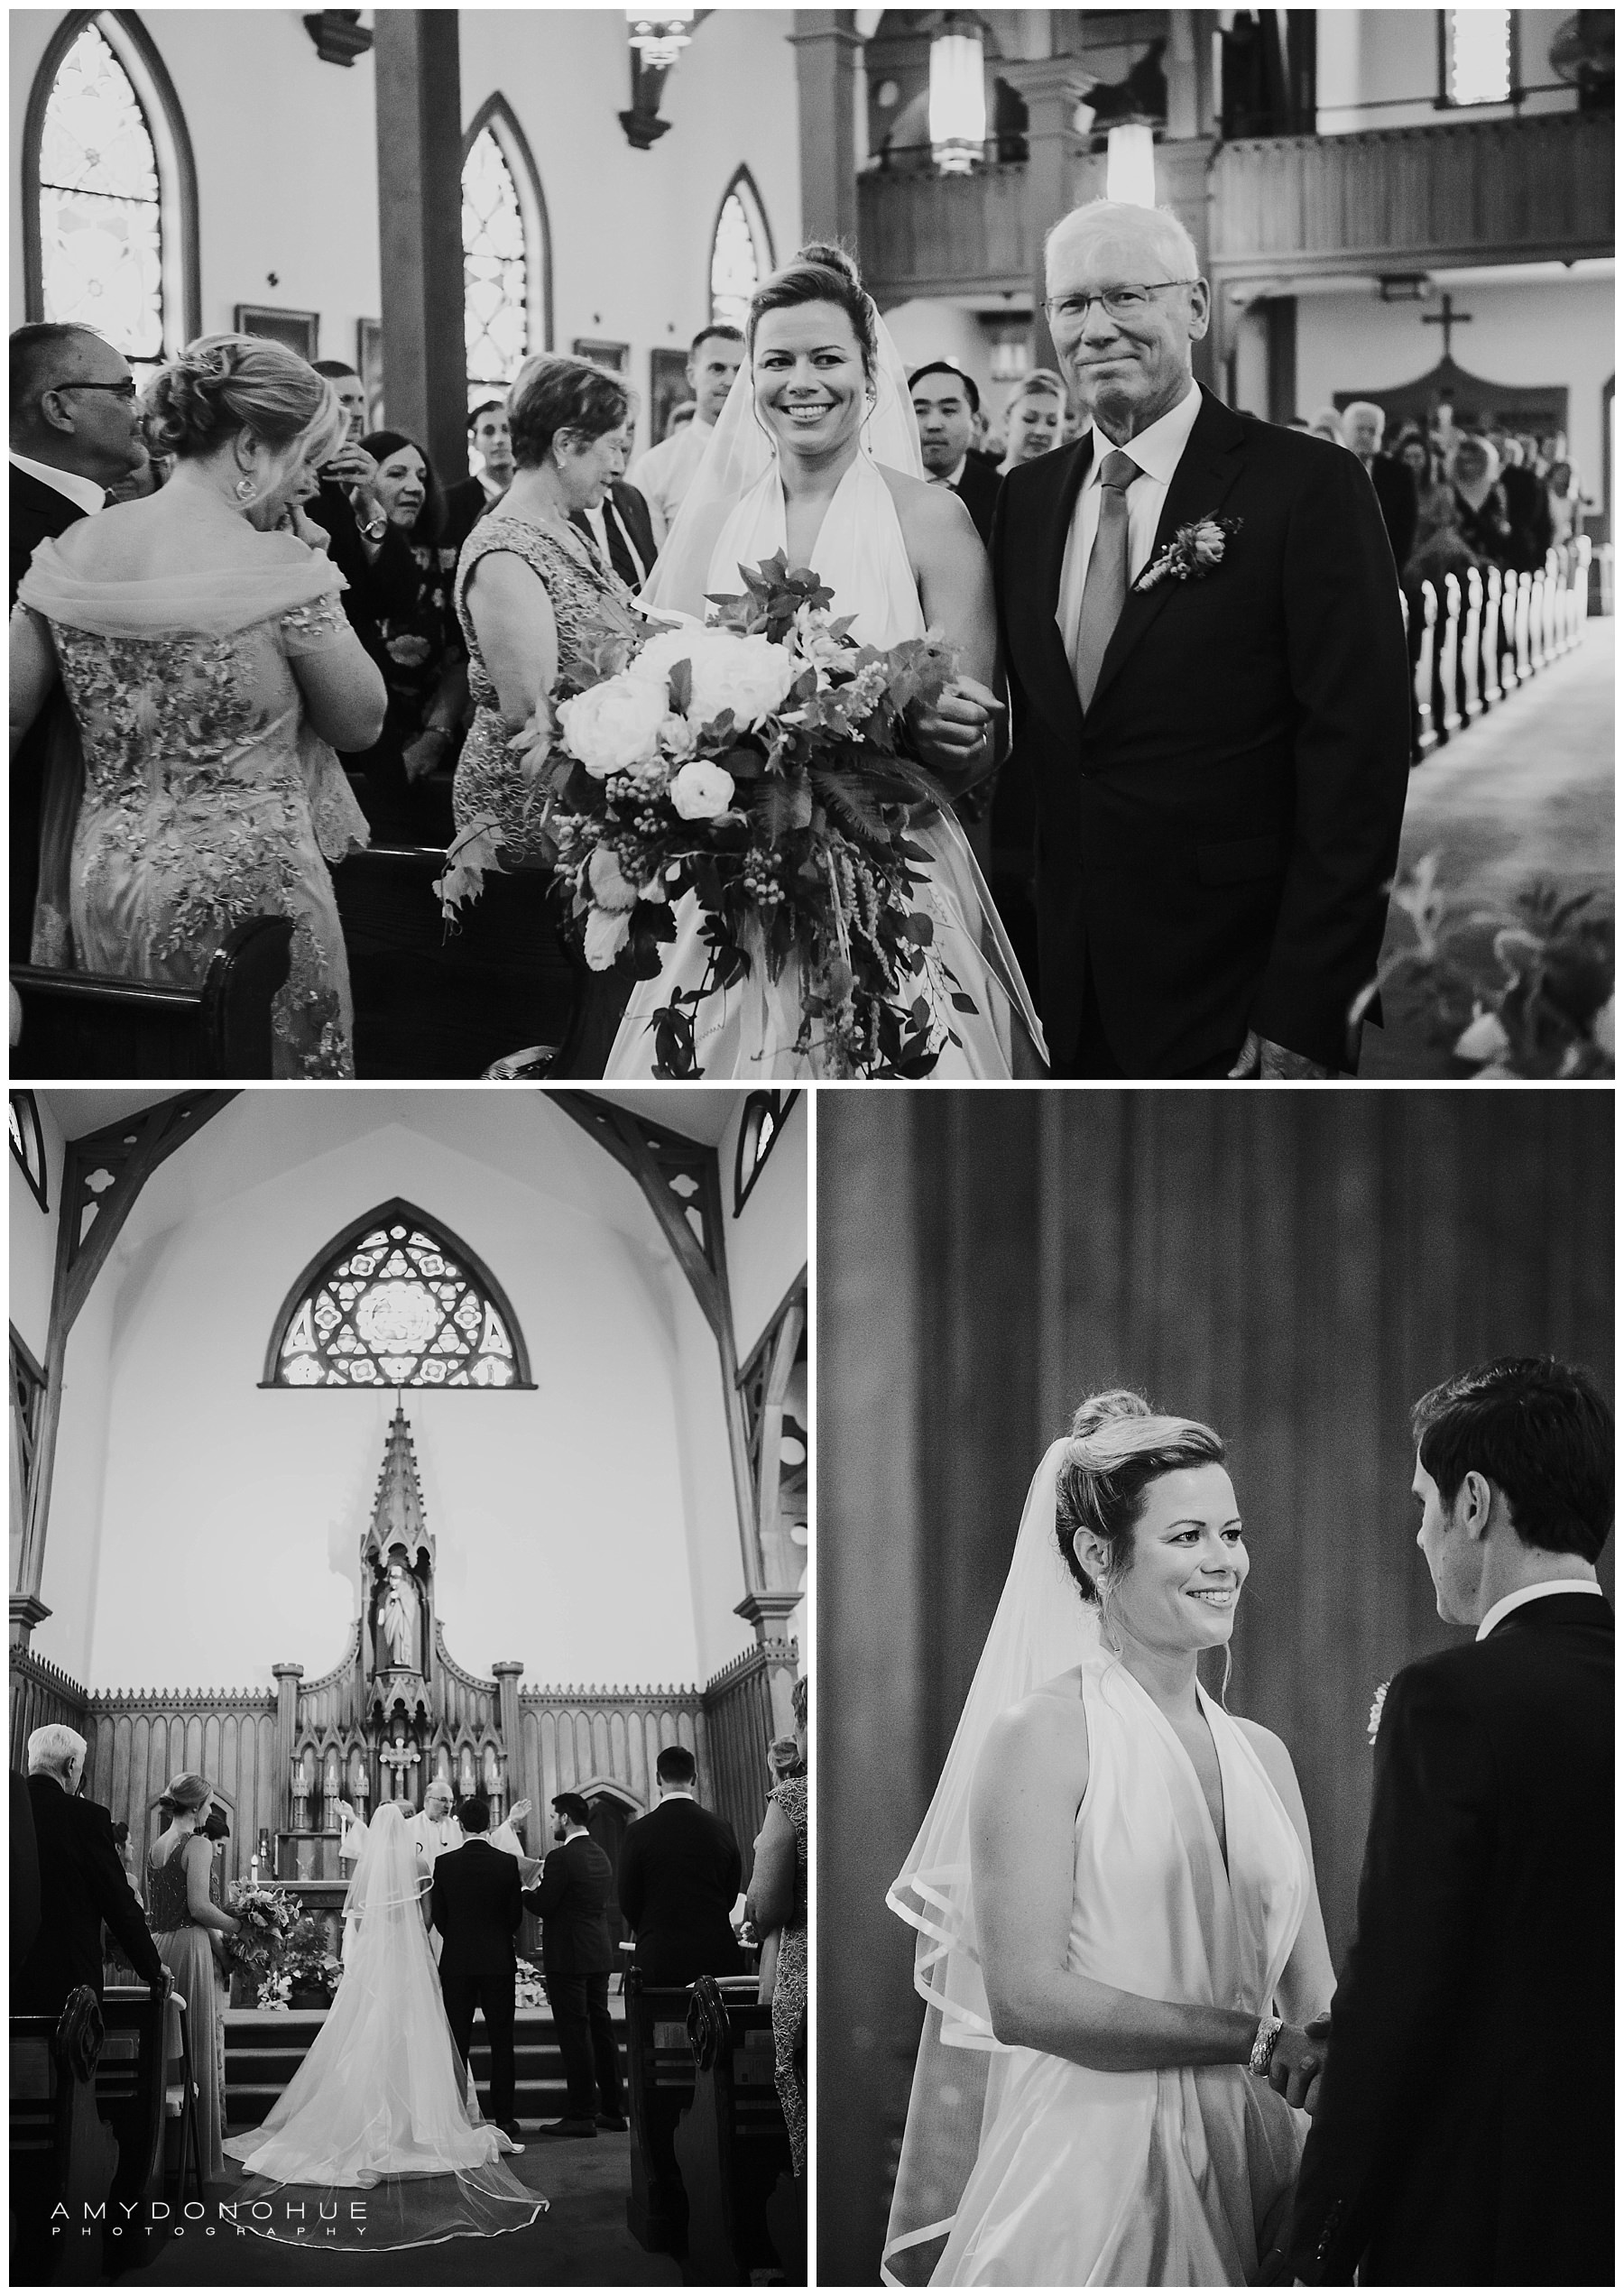 Wedding Ceremony | Basin Harbor Wedding Photographer | © Amy Donohue Photography